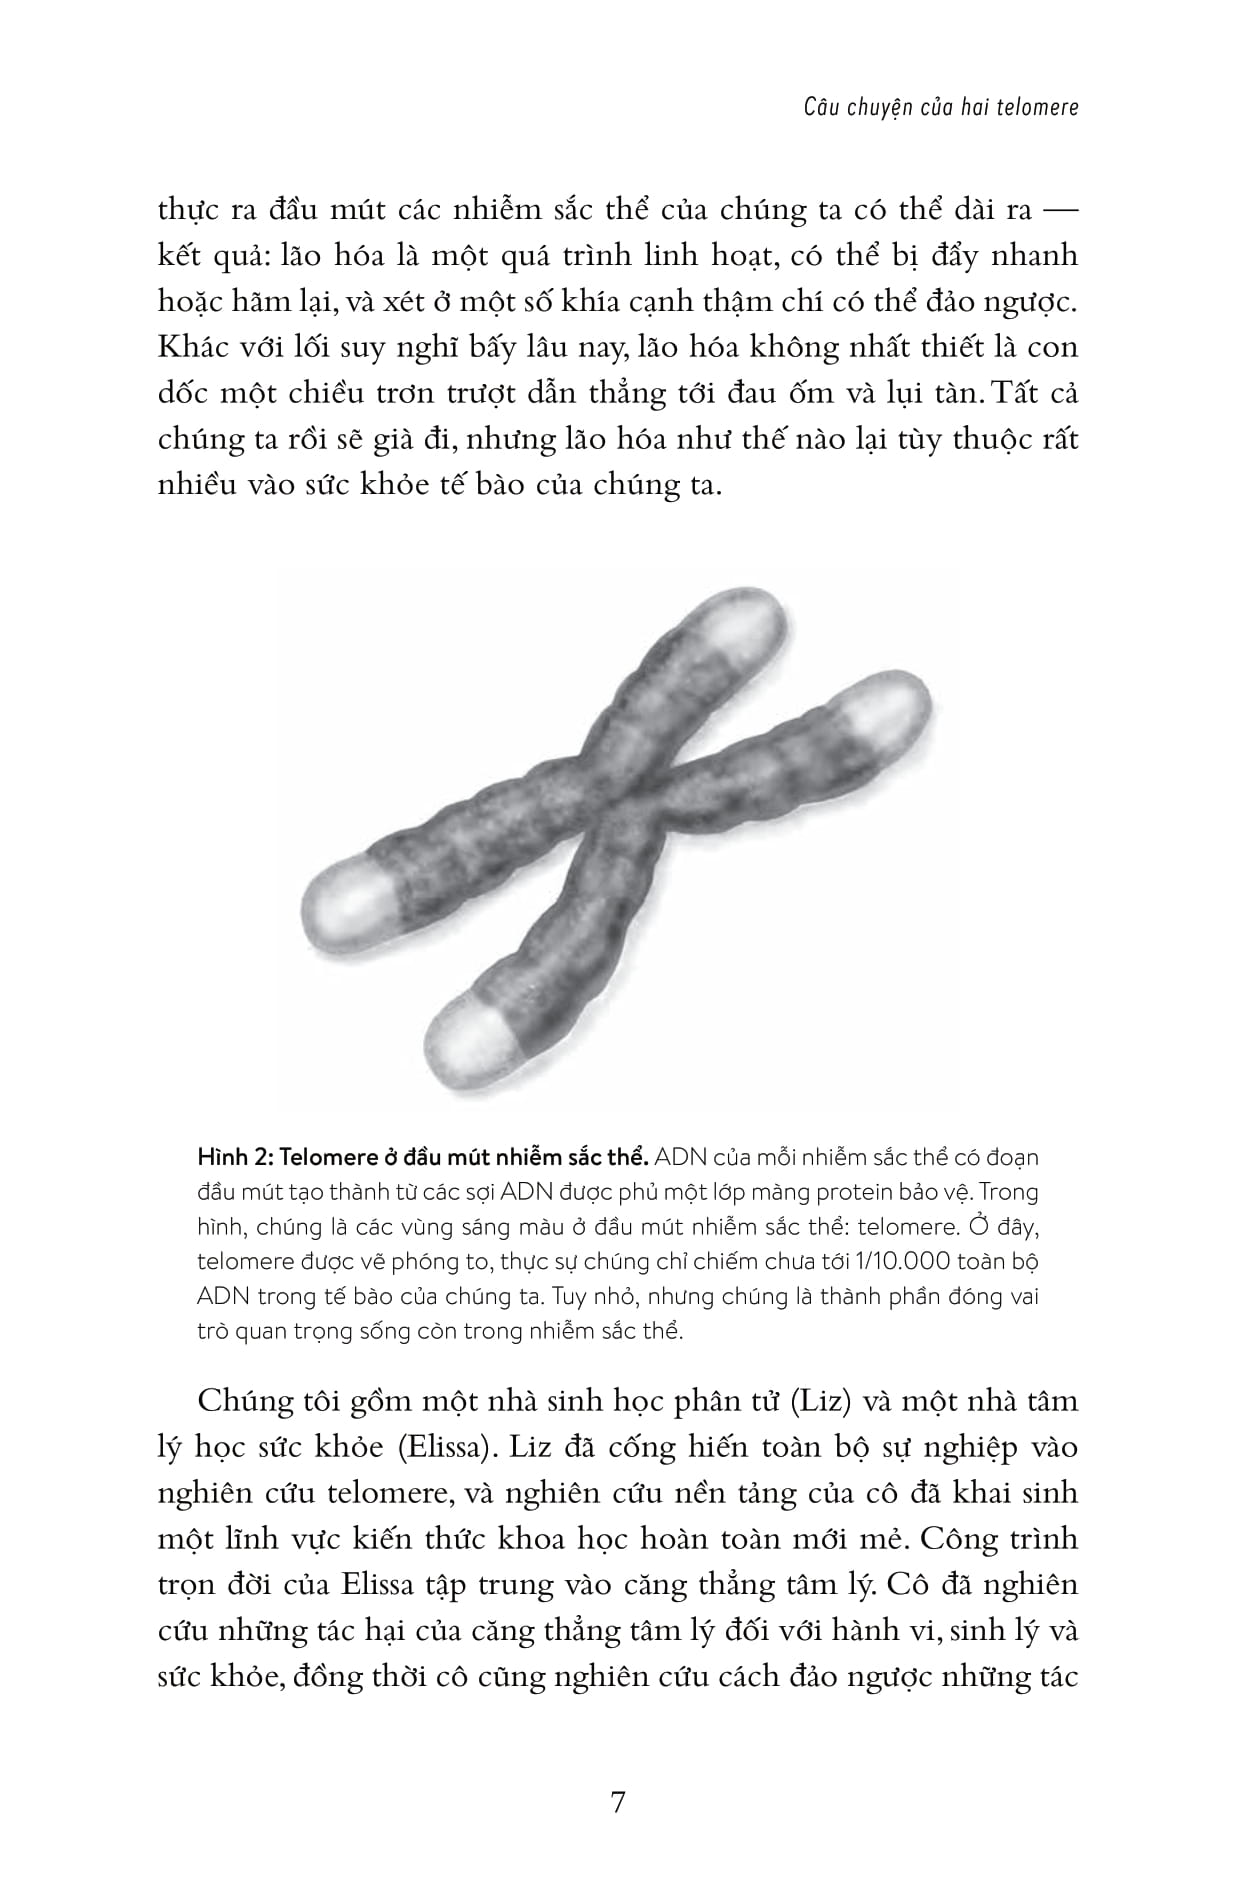 Hiệu Ứng Telomere: Giải Pháp Đột Phá Để Sống Trẻ, Khỏe, Và Ngăn Ngừa Lão Hóa PDF